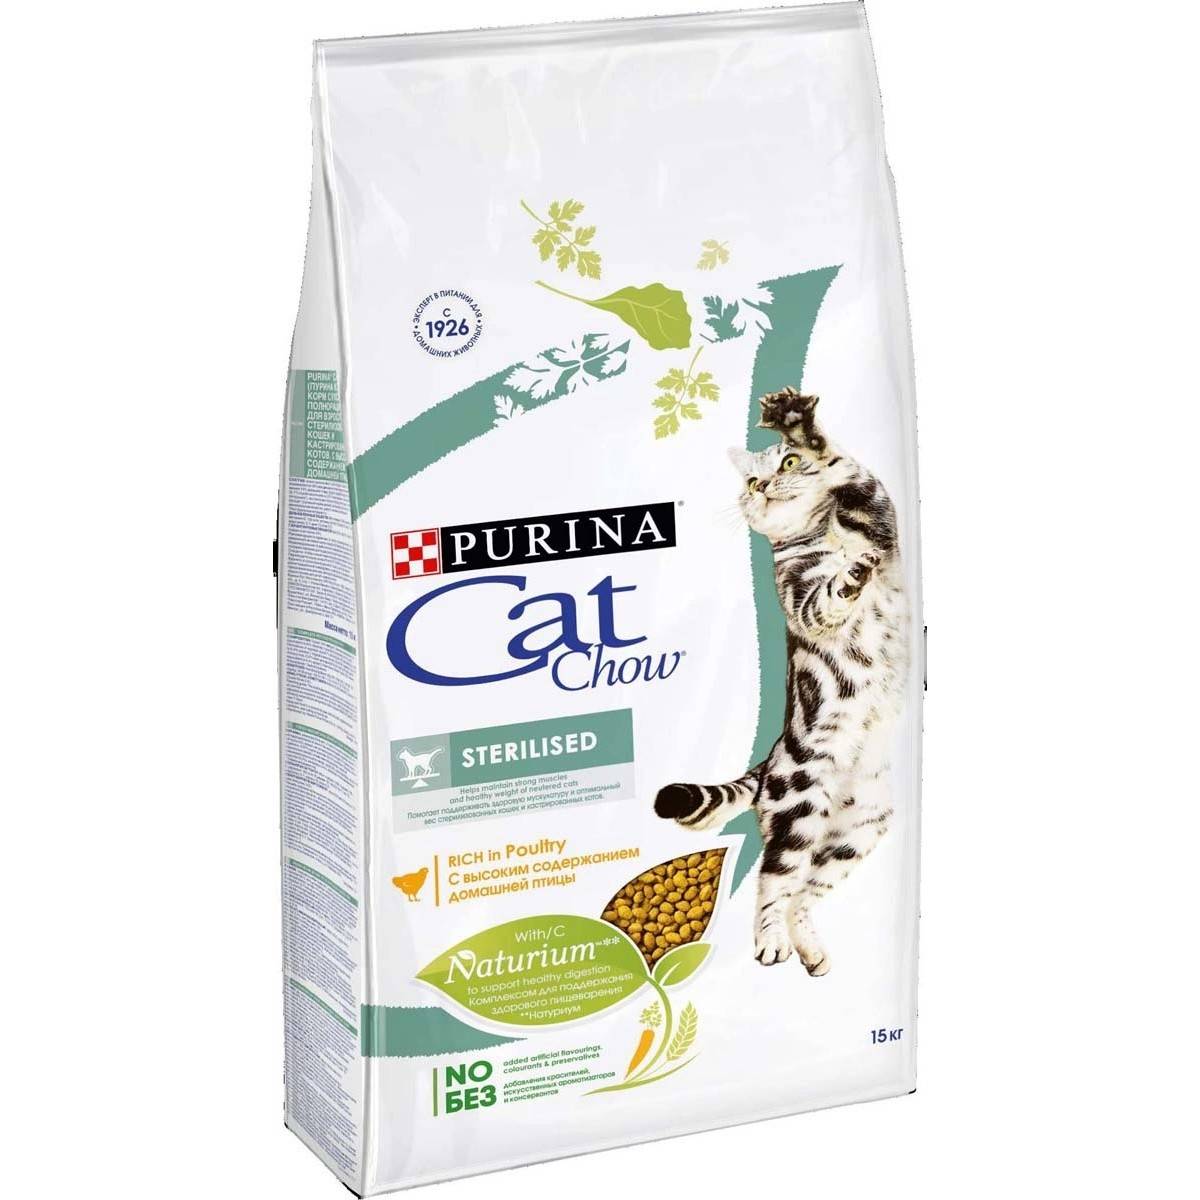 Сухой корм для кошек "кэт чау" (cat chow) от фирмы purina: состав, отзывы